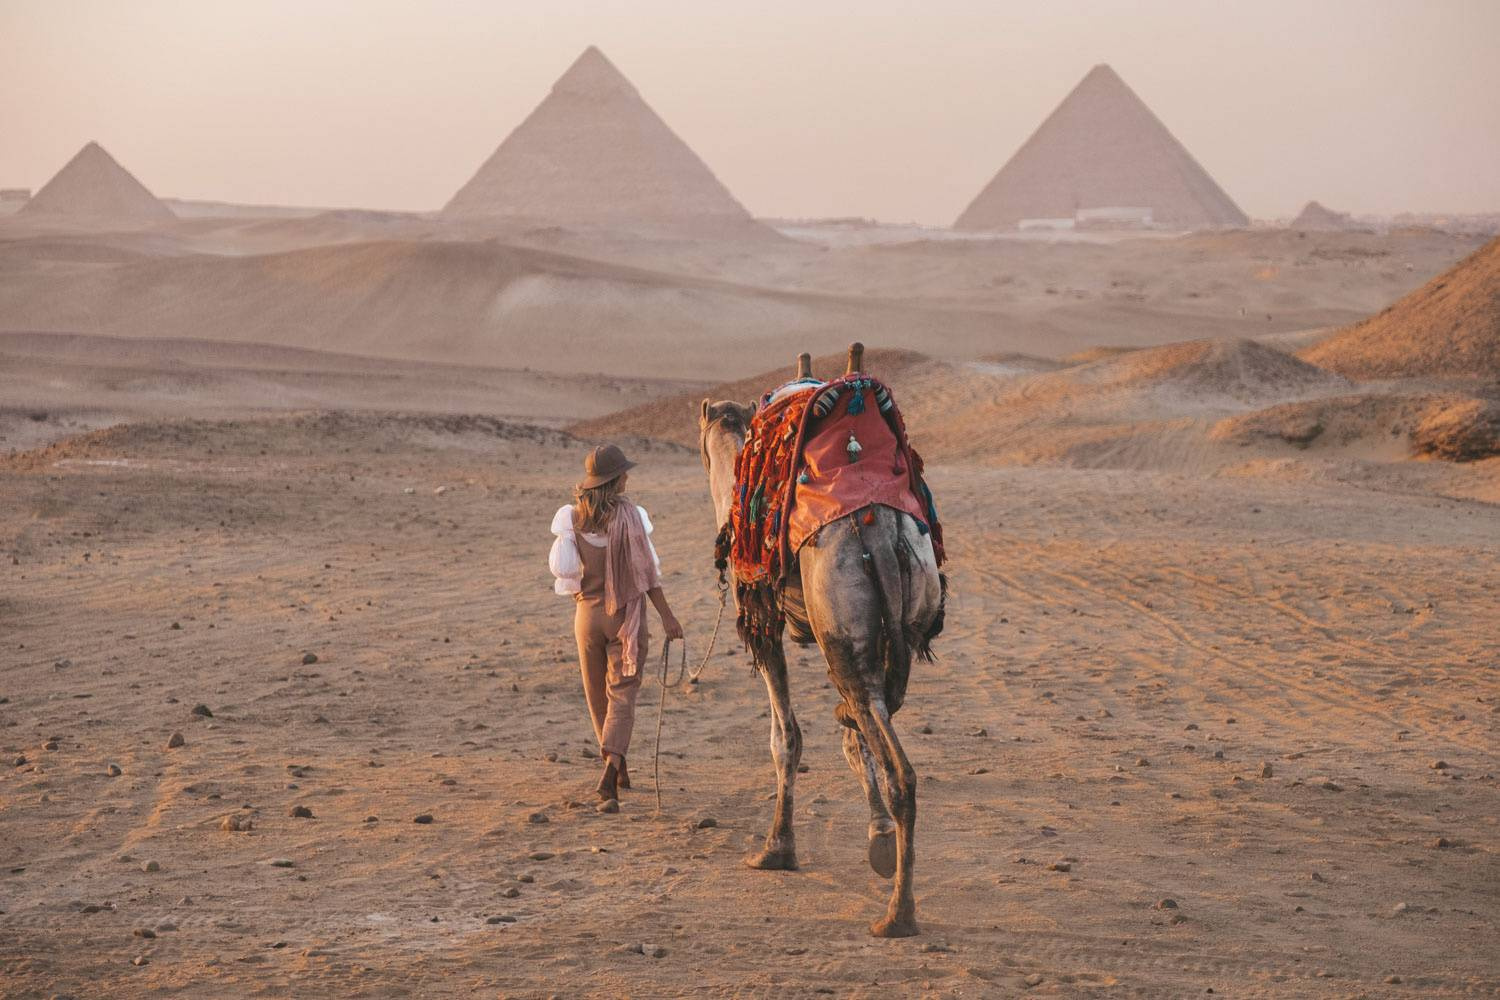 Excursion aux pyramides de Gizeh depuis le Caire